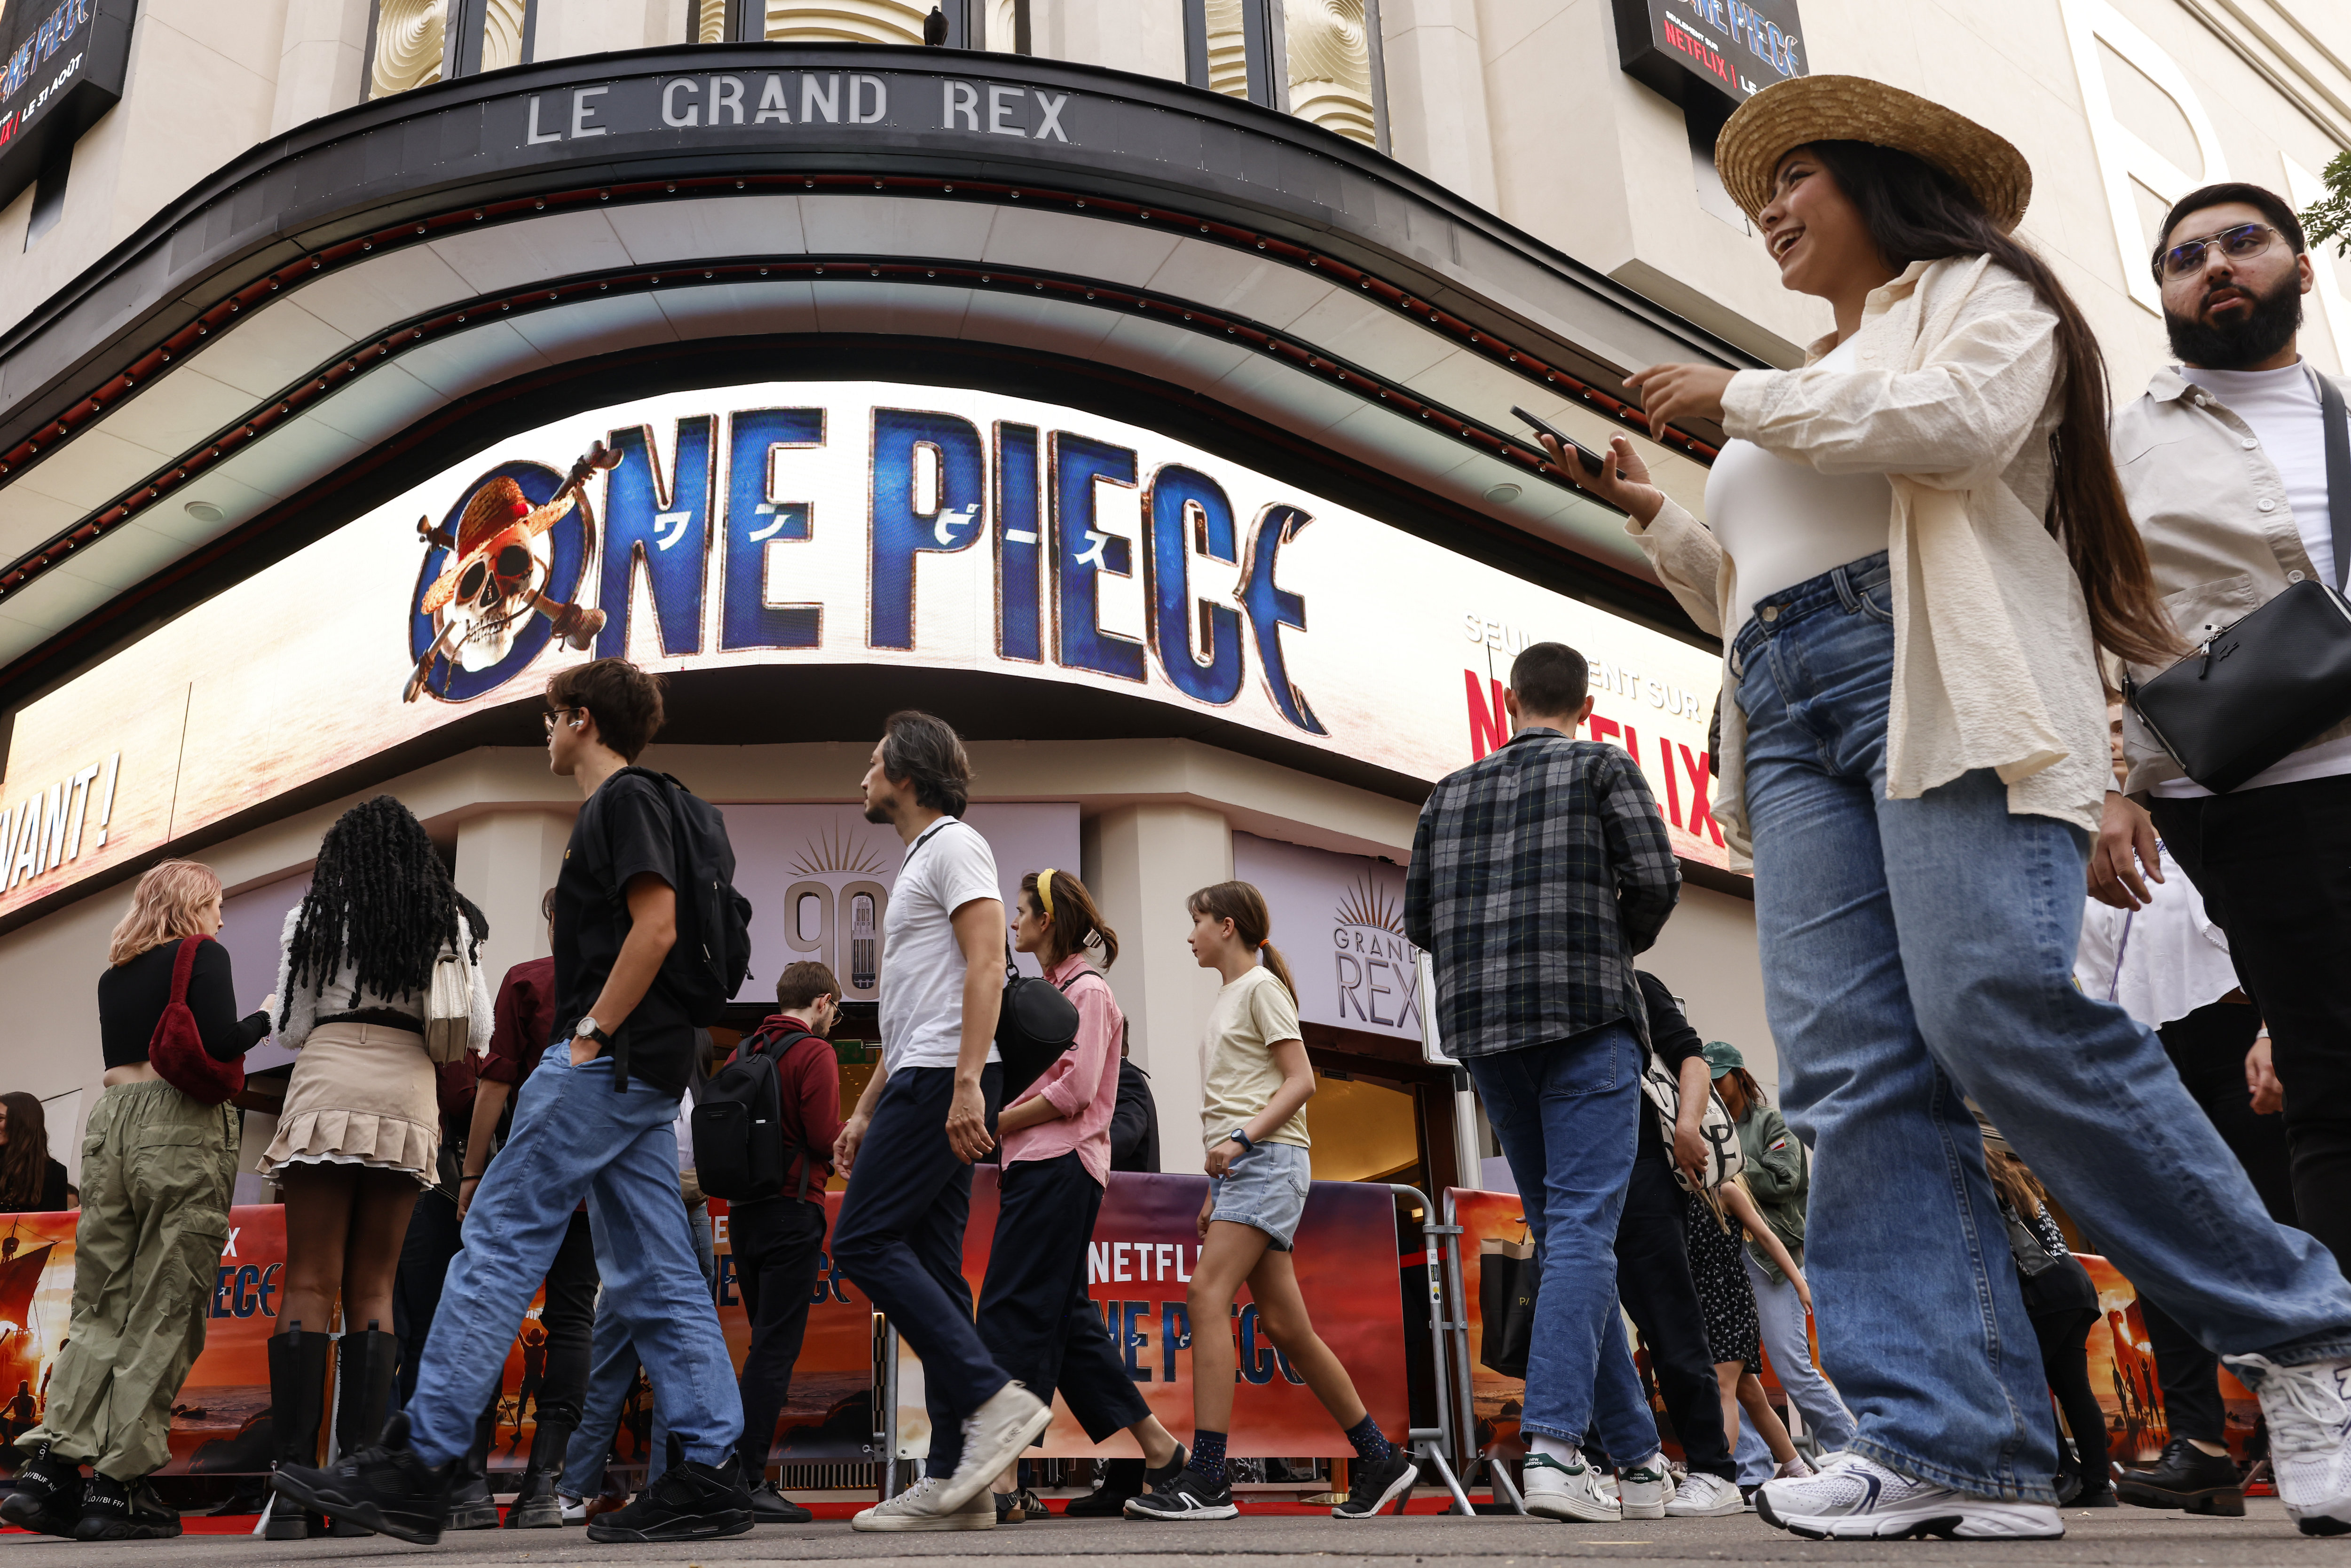 Le Grand Rex (Paris IIe), mardi 29 août. Les fans étaient présents en nombre à l'avant-première de One Piece, série Netflix adaptée du manga. LP/Olivier Corsan